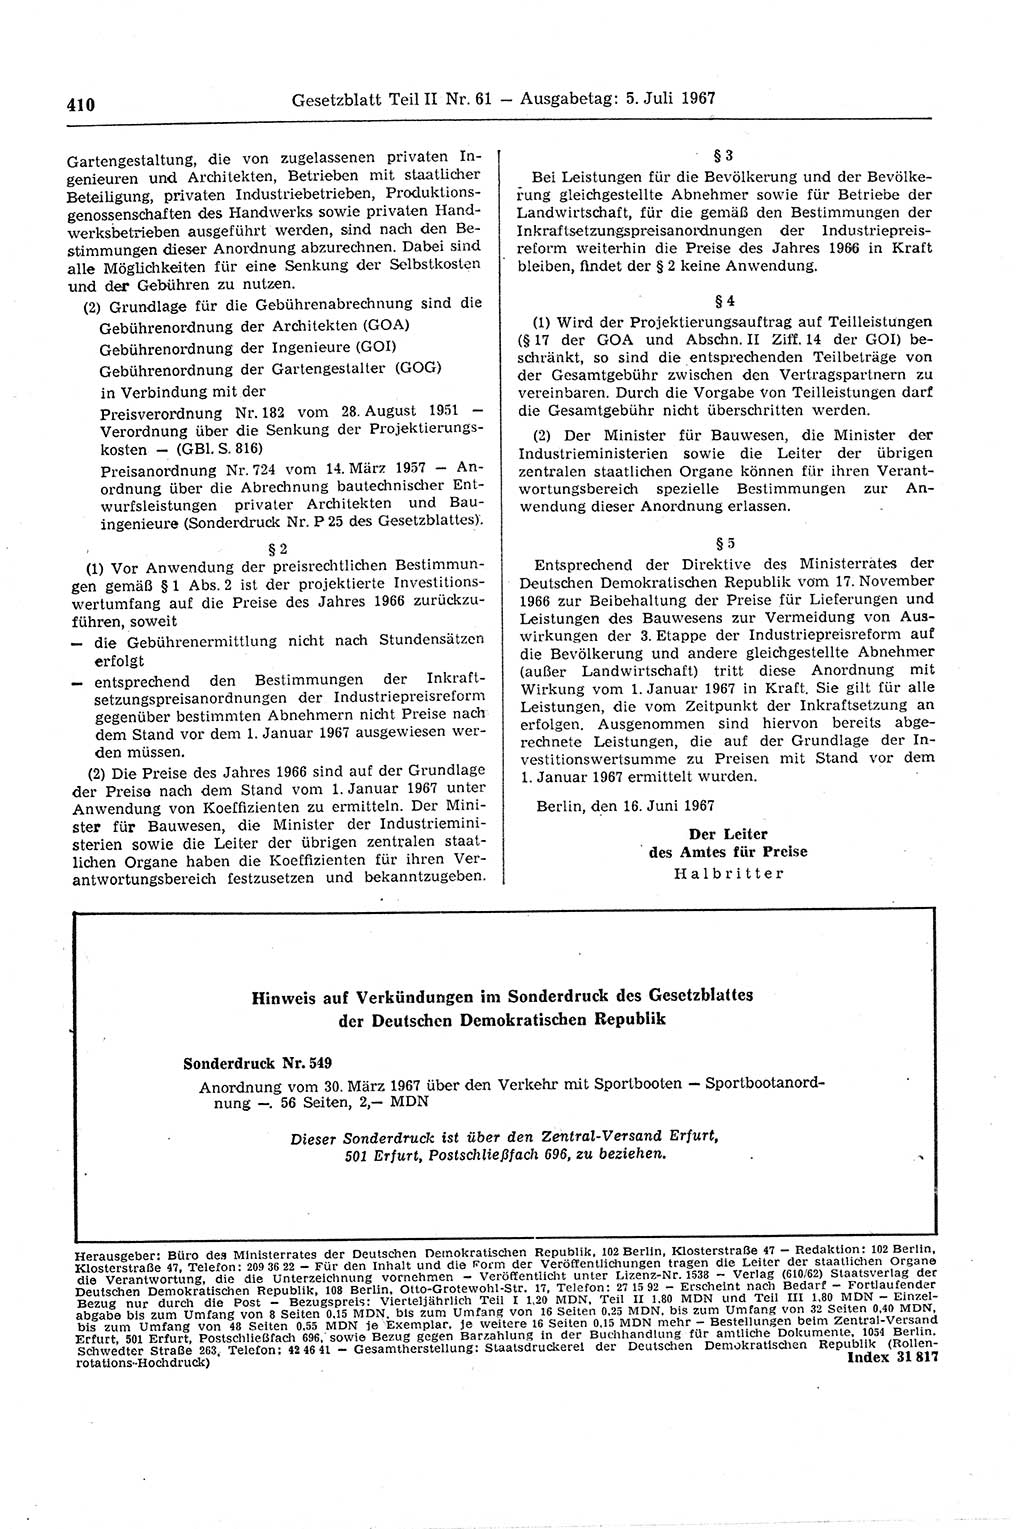 Gesetzblatt (GBl.) der Deutschen Demokratischen Republik (DDR) Teil ⅠⅠ 1967, Seite 410 (GBl. DDR ⅠⅠ 1967, S. 410)